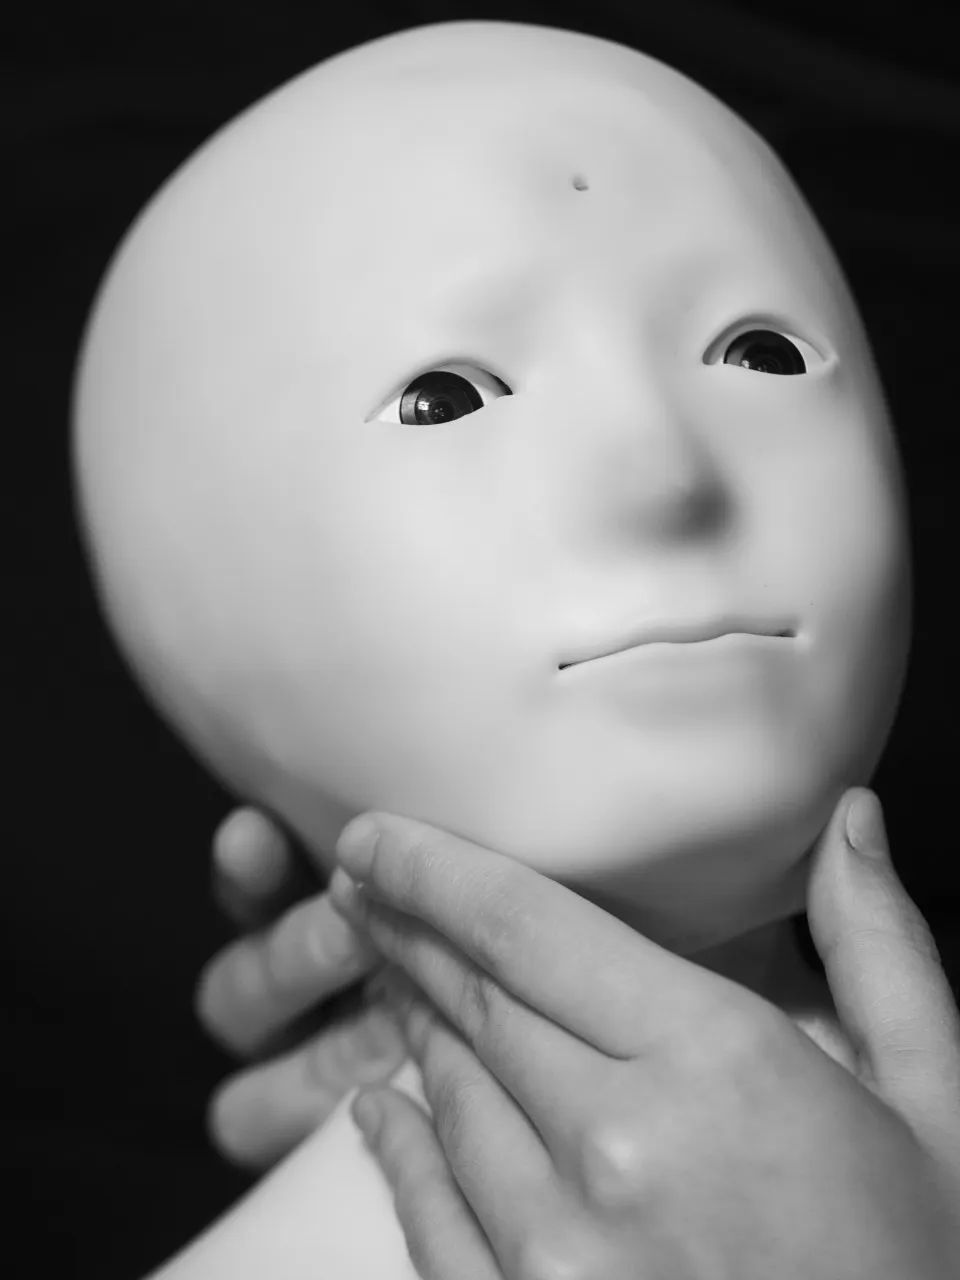 奥利维娅拍摄的人形机器人Telenoid可接收触觉信息并通过千里之外另一机器人反馈给对方。人工智能宠物Lovot则会对用户情绪做出反应。©Olivia Arthur｜Magnum Photos